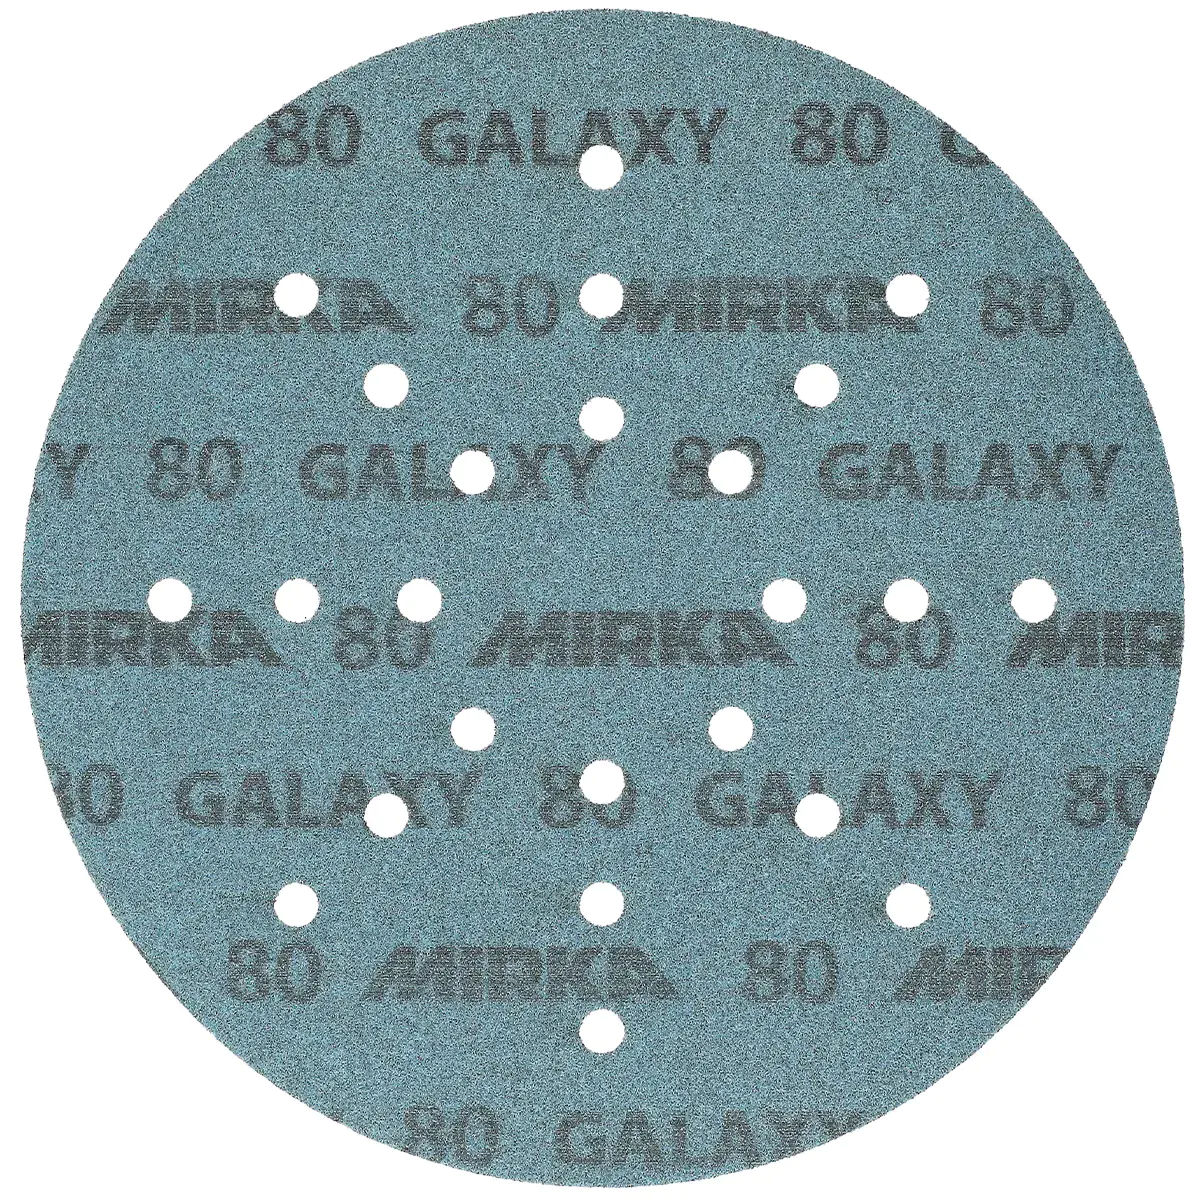 Шлифовальный диск Mirka GALAXY 225 мм под липучку. Р80. Финляндия.